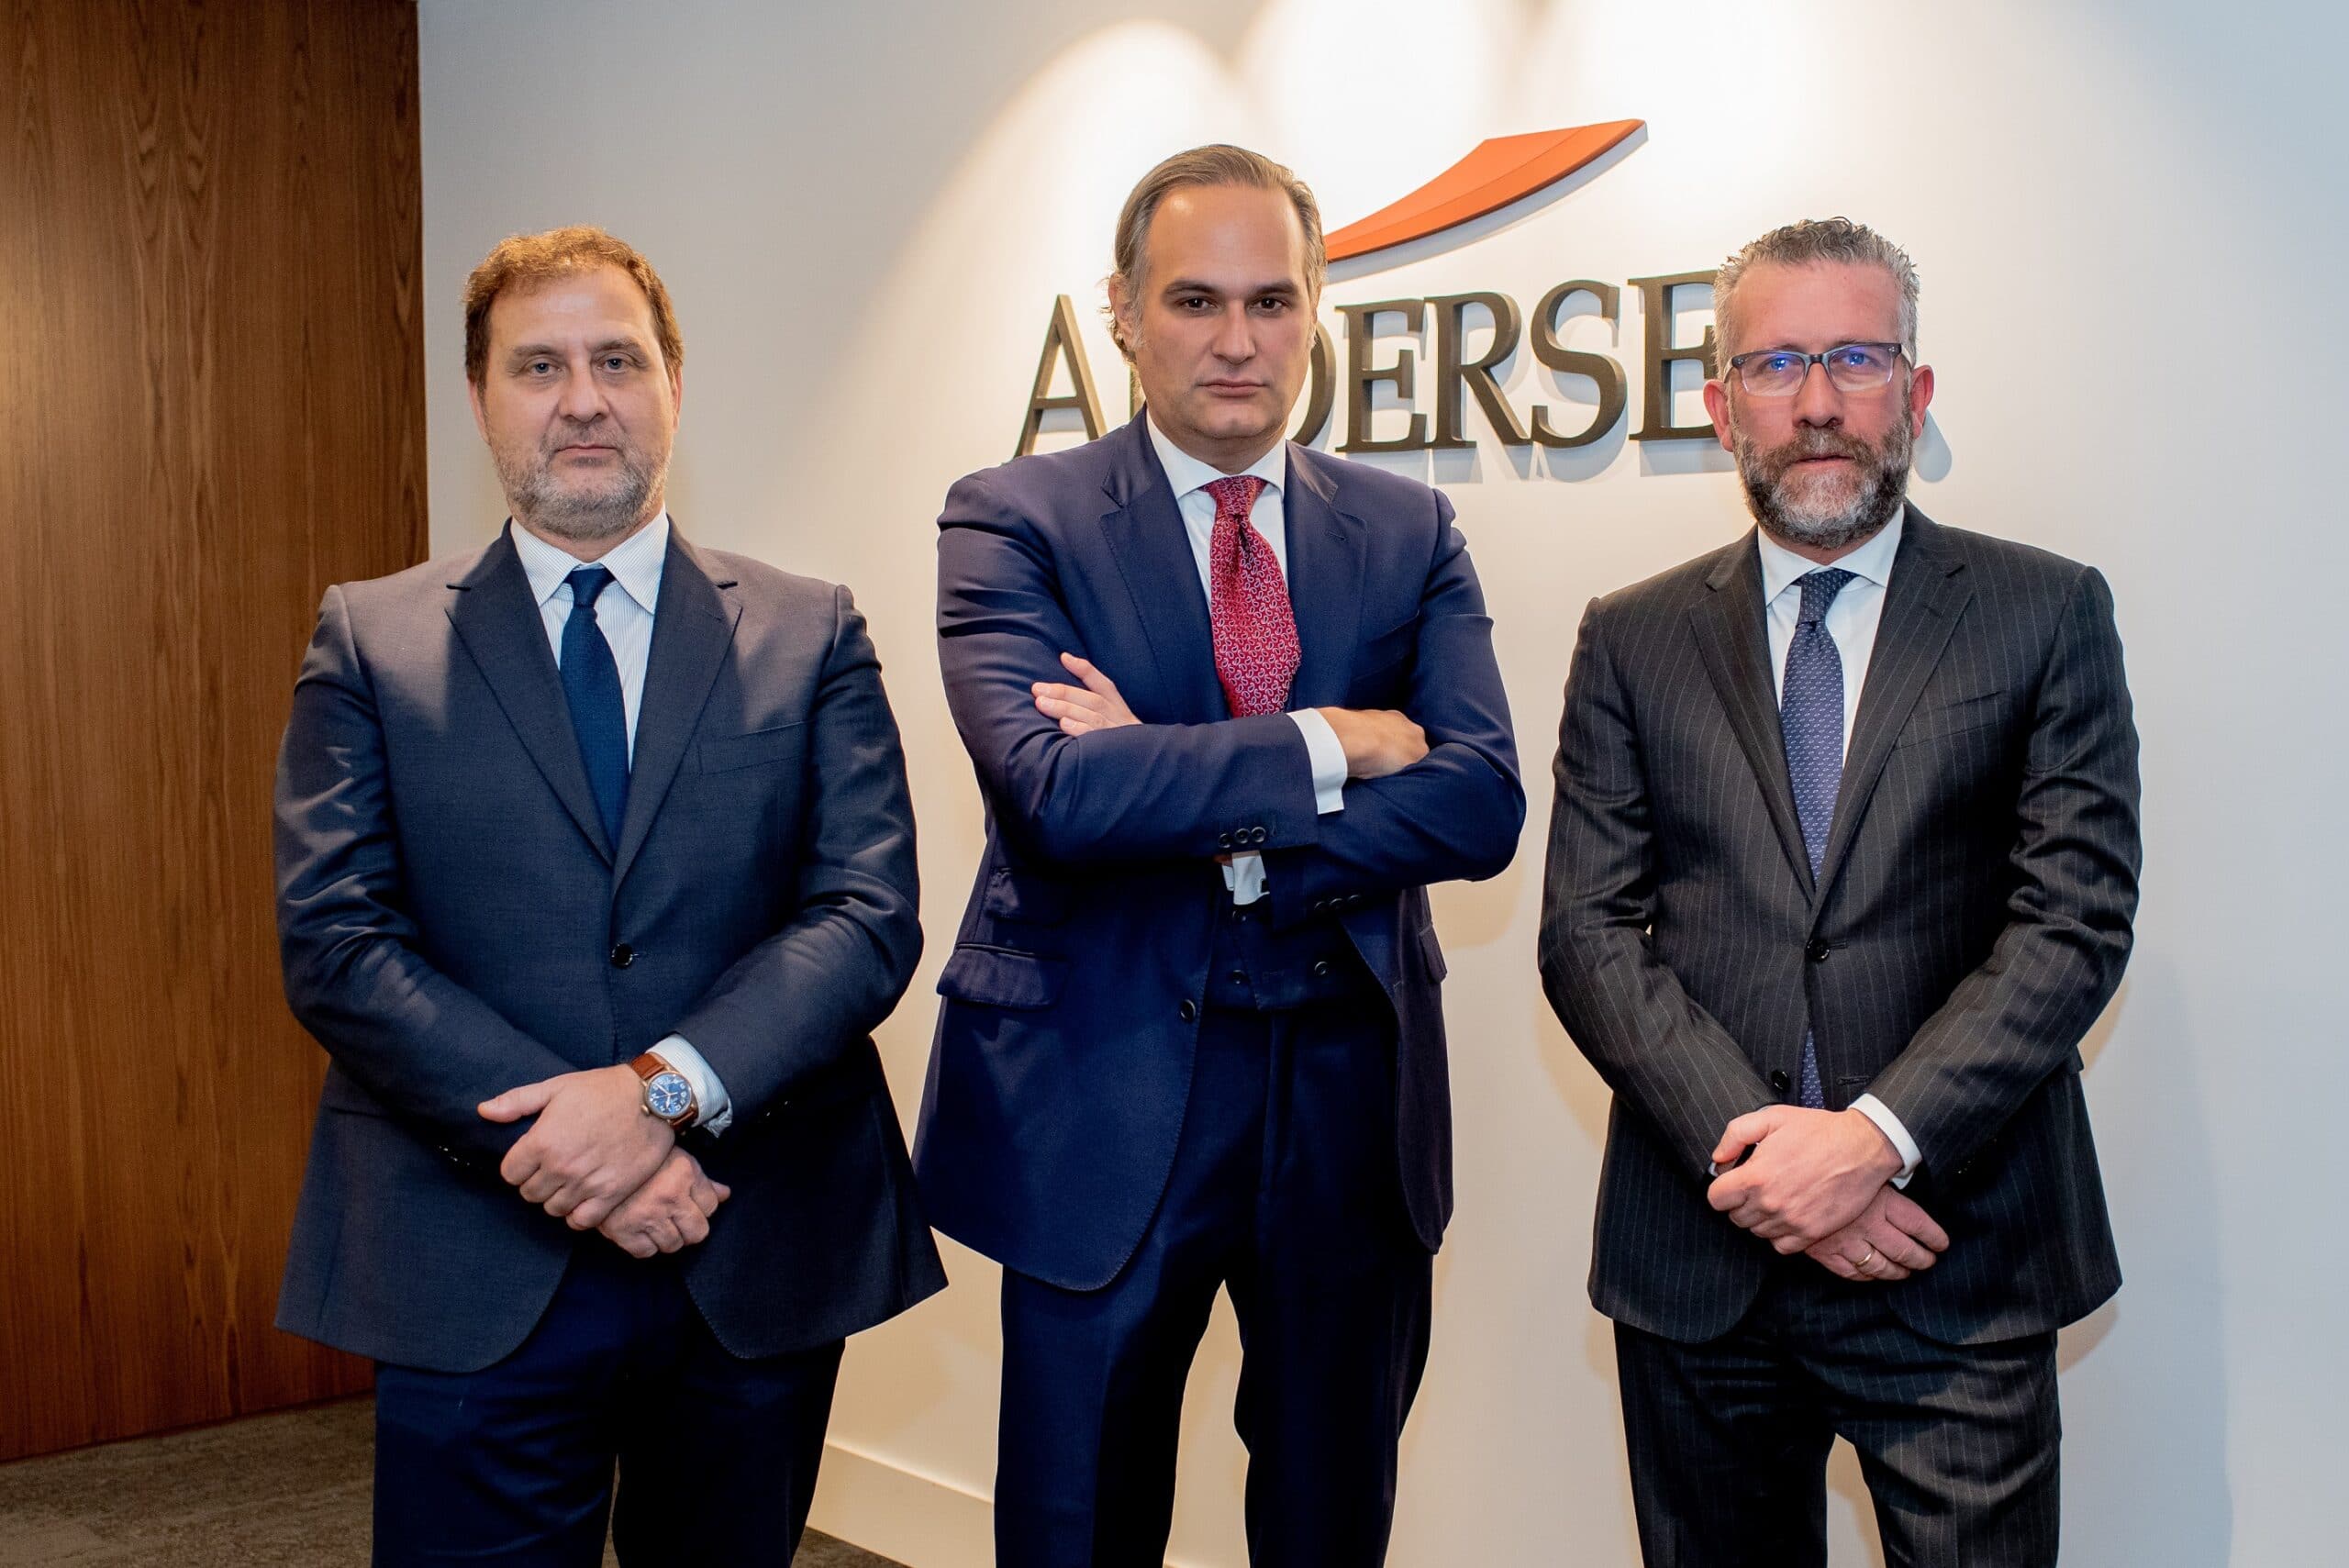 Andersen ficha a Pablo Doñate, socio de Litigación de Martínez-Echevarría, para reforzar el área de Procesal y Arbitraje en Madrid